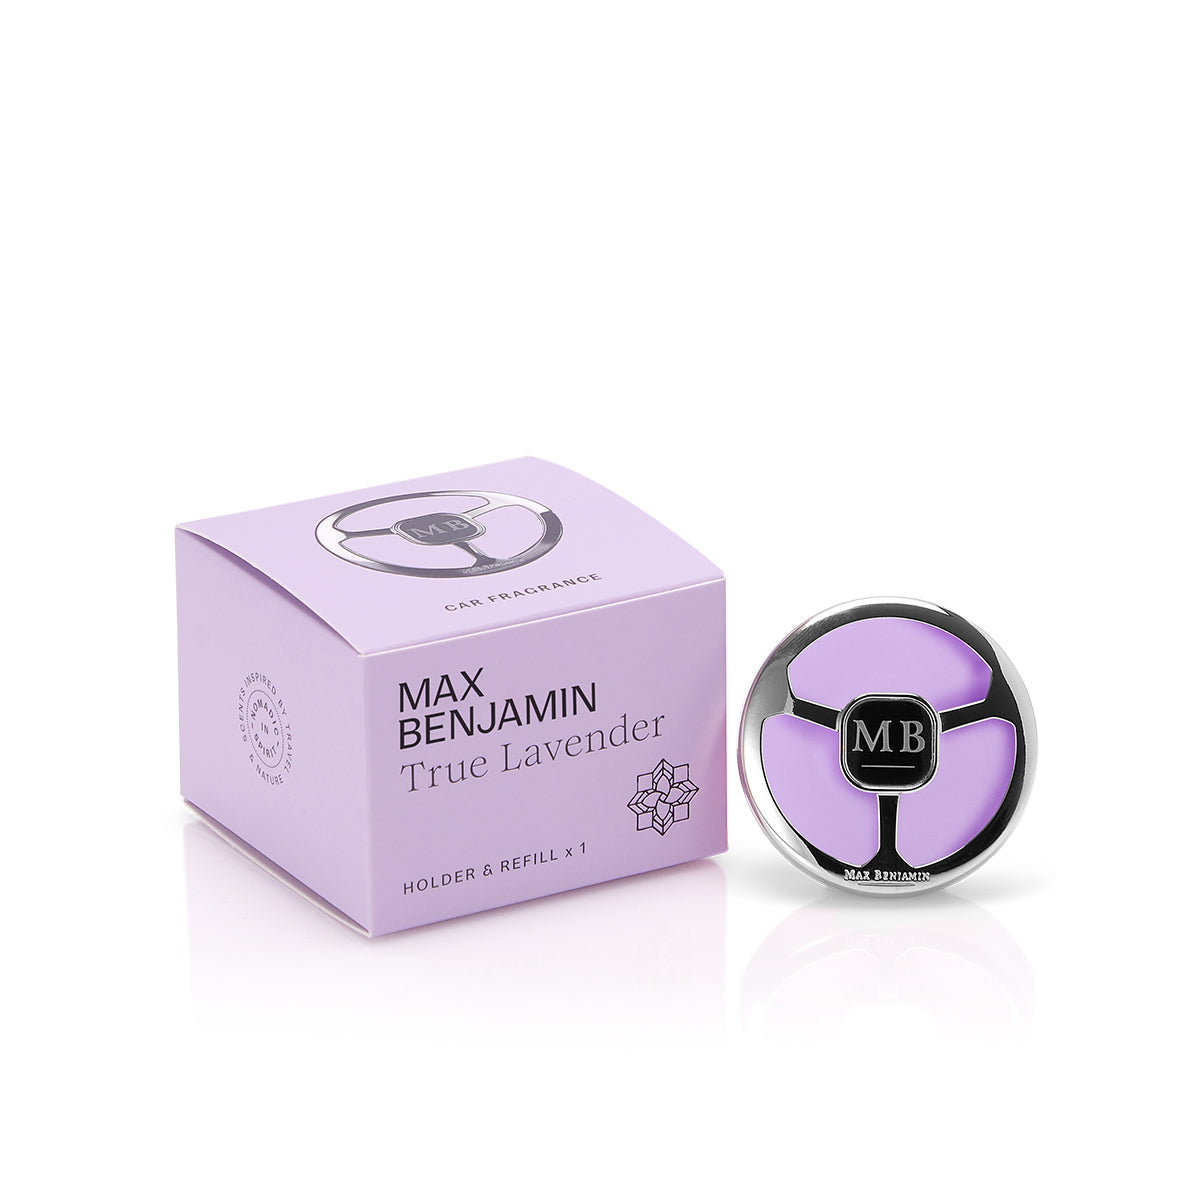 True Lavender Complete Car Fragrance - Max Benjamin